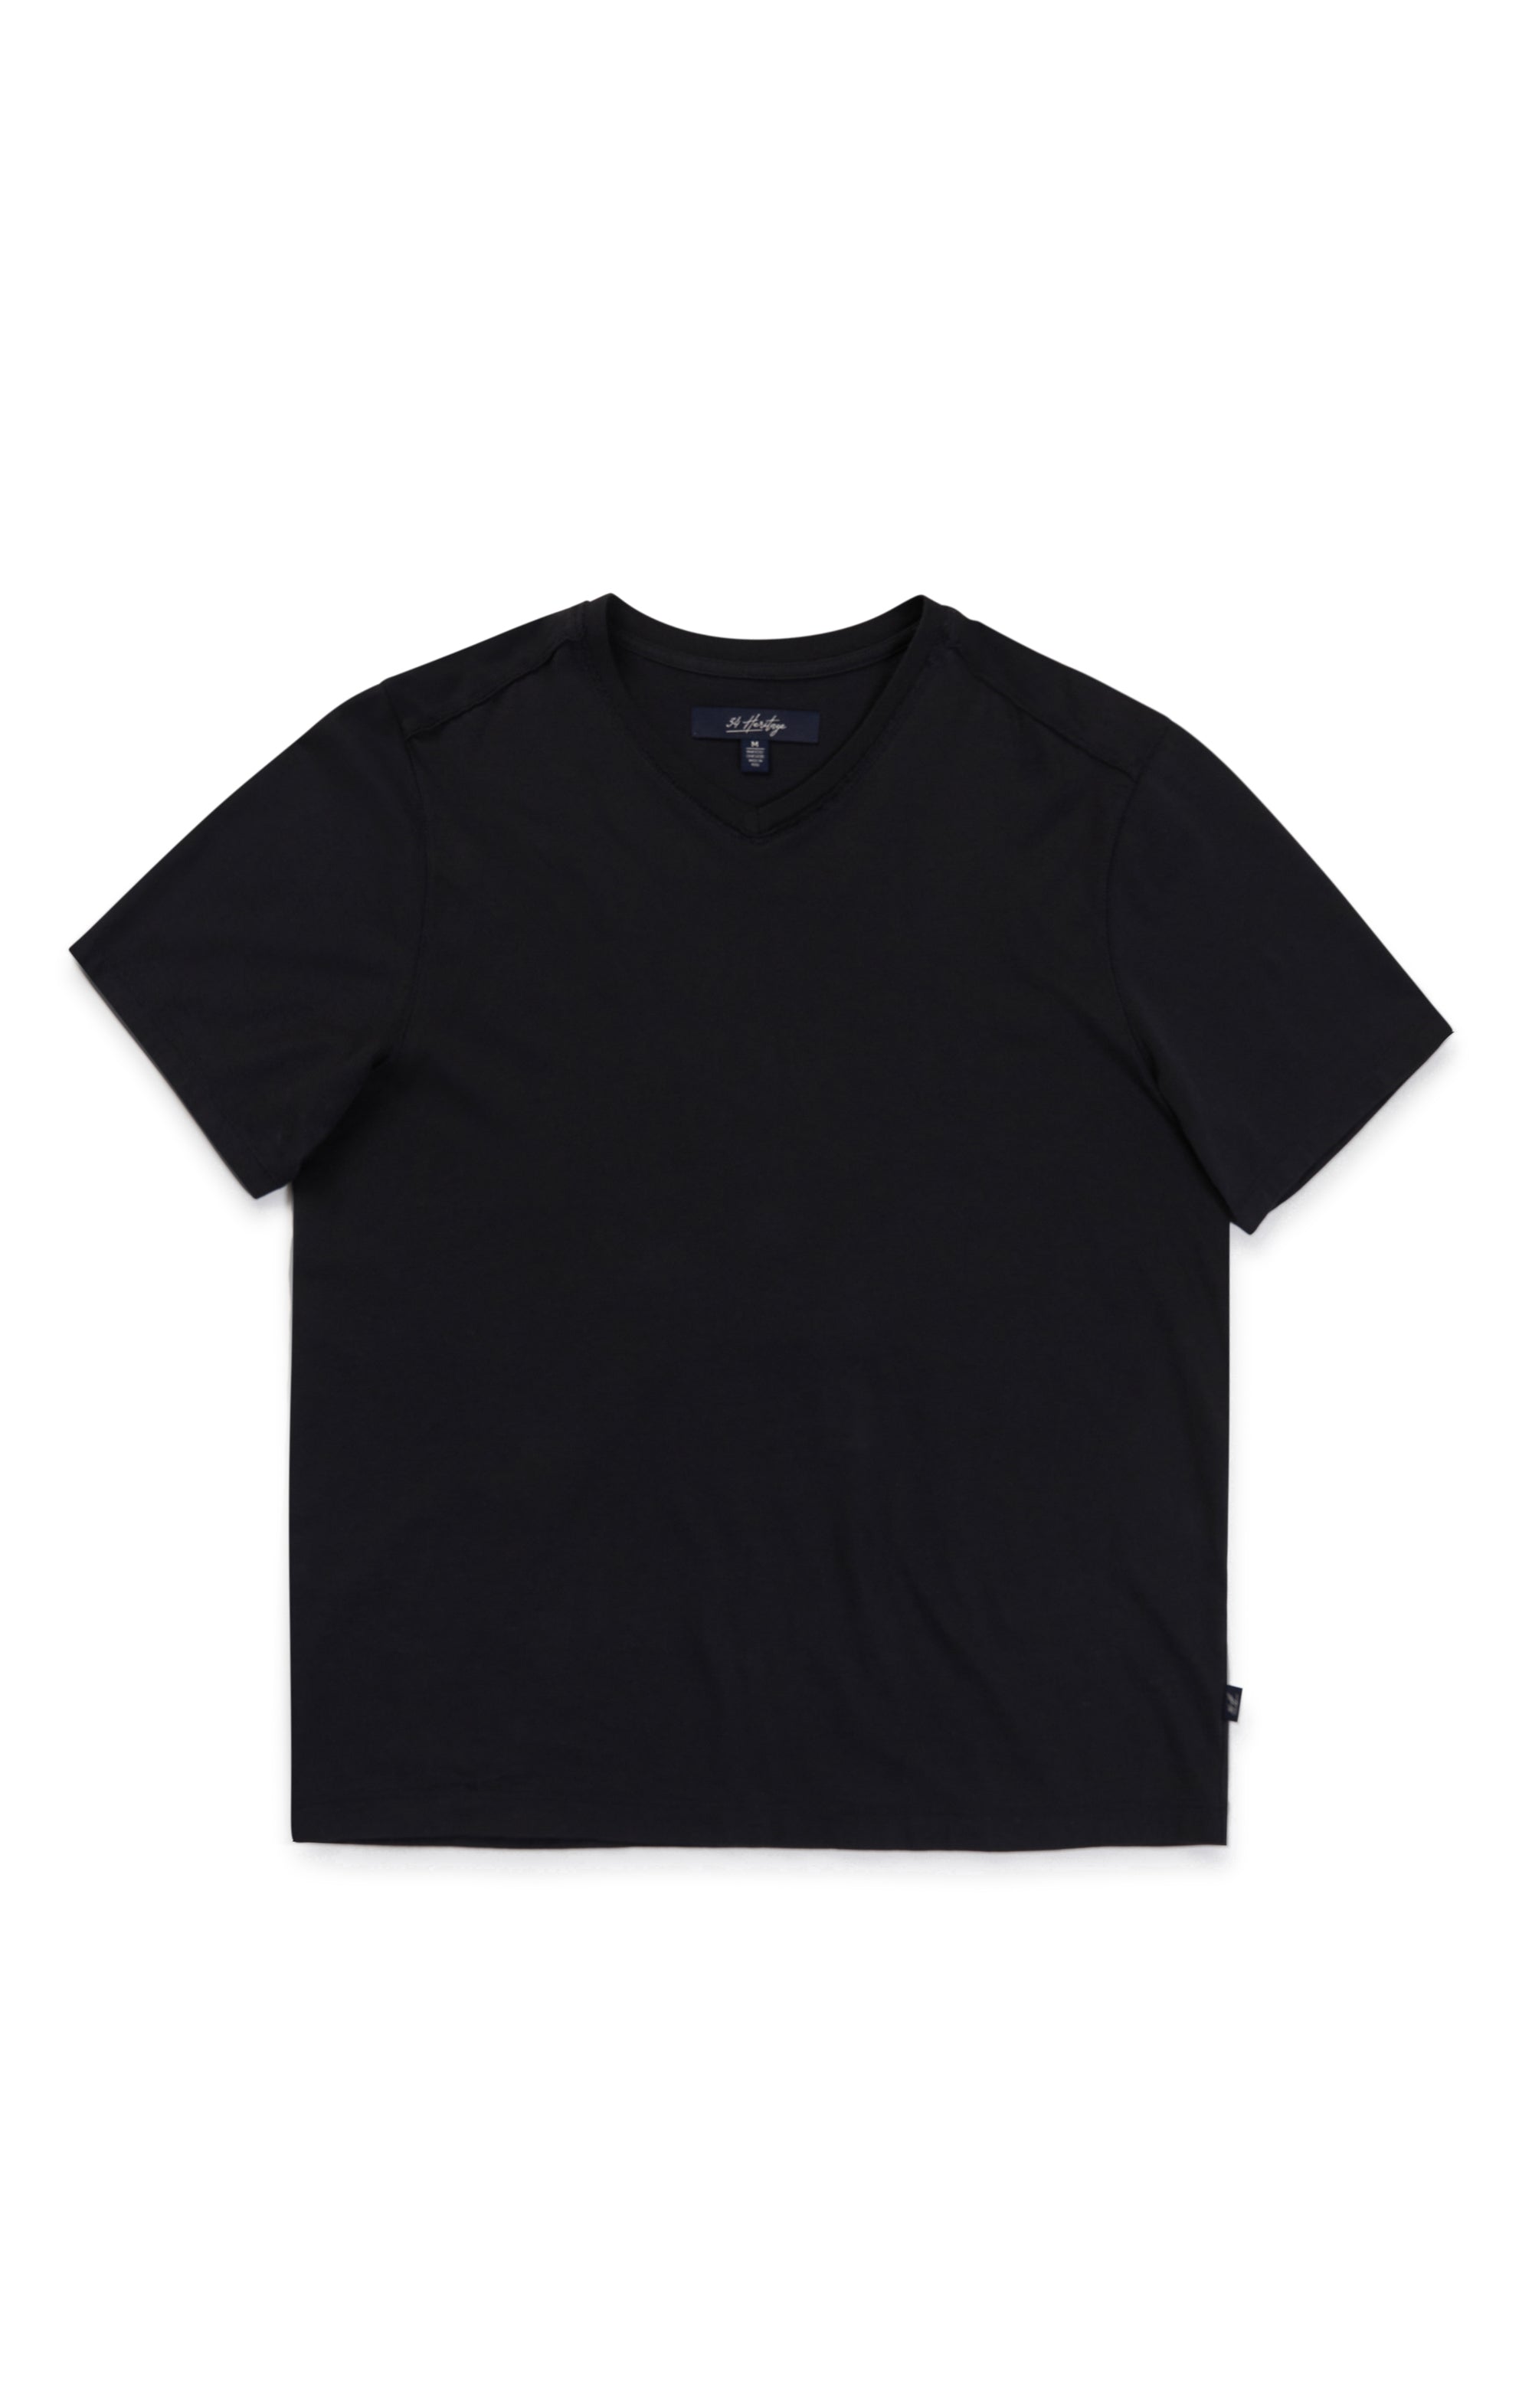 Deconstructed V-Neck T-Shirt in Black Image 7